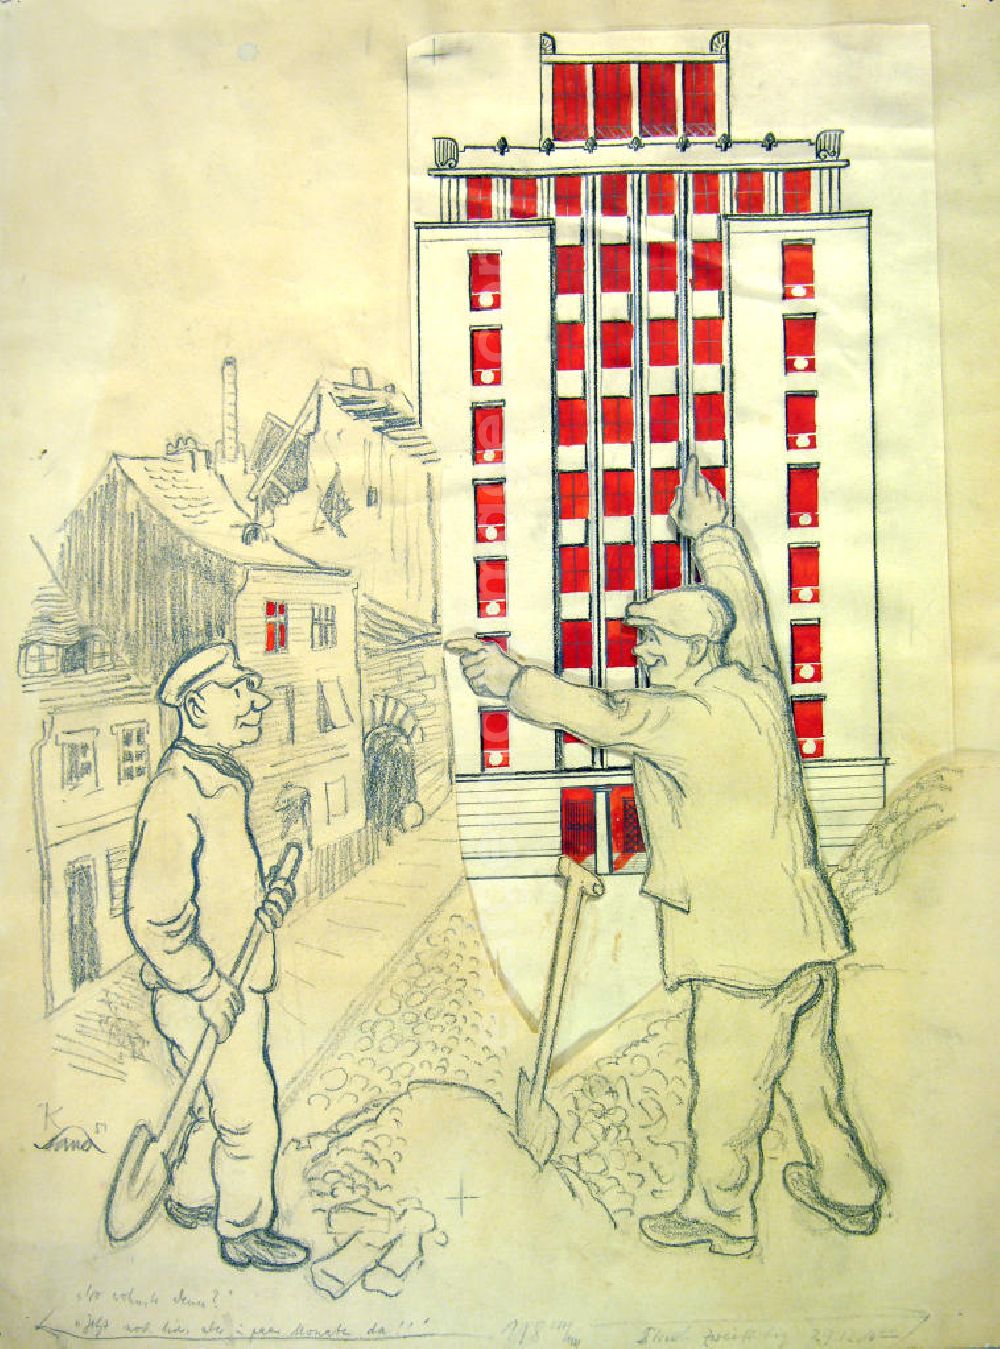 GDR photo archive: Berlin - Zeichnung von Herbert Sandberg Weberwiese aus dem Jahr 1951, 38,0x49,